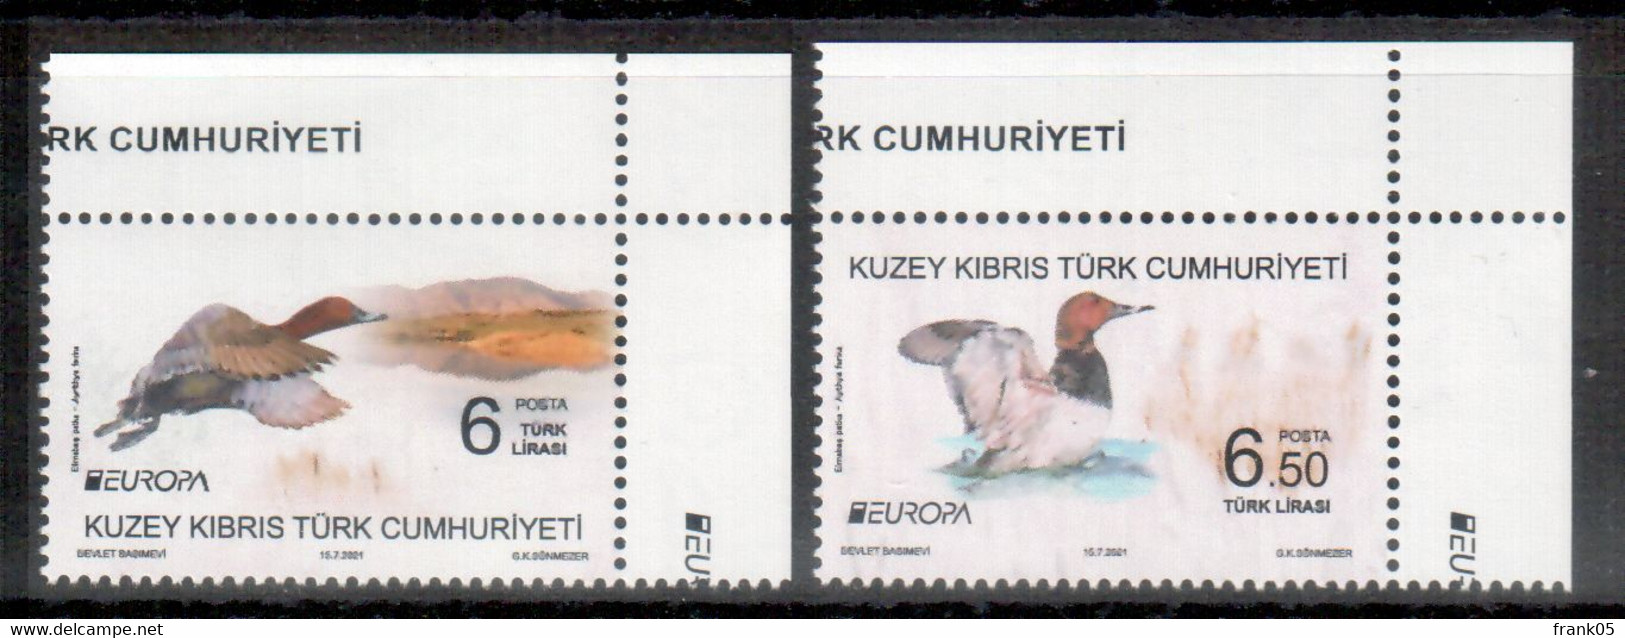 Türkisch-Zypern / Turkish Republic Of Northern Cyprus / Chypre Turc 2021 Satz/set EUROPA ** - 2021